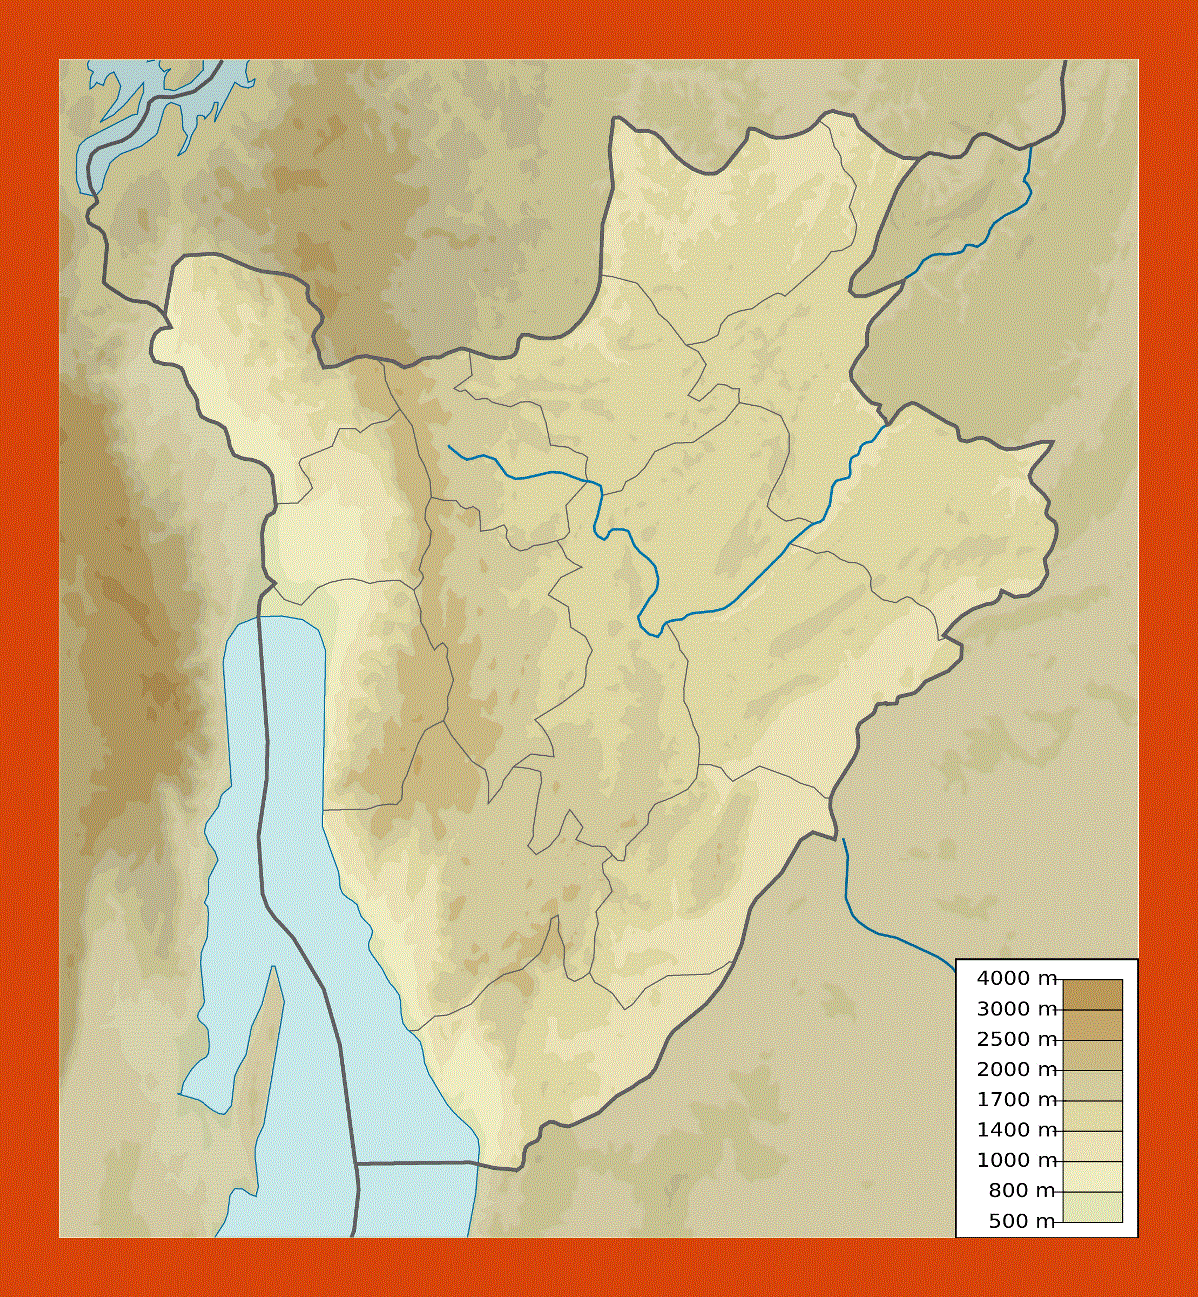 Elevation map of Burundi